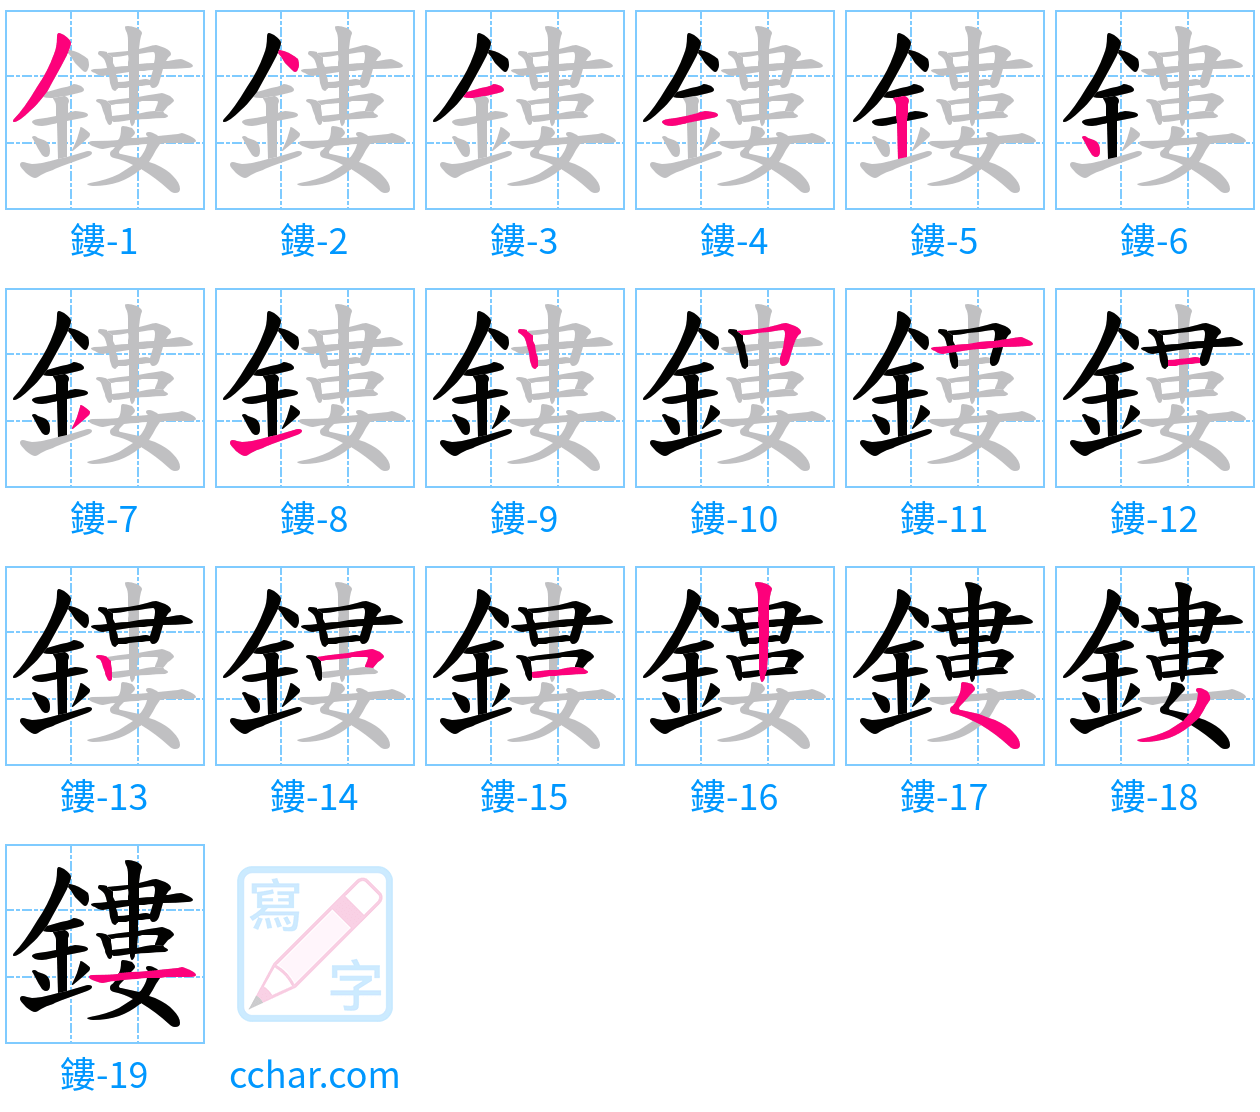 鏤 stroke order step-by-step diagram